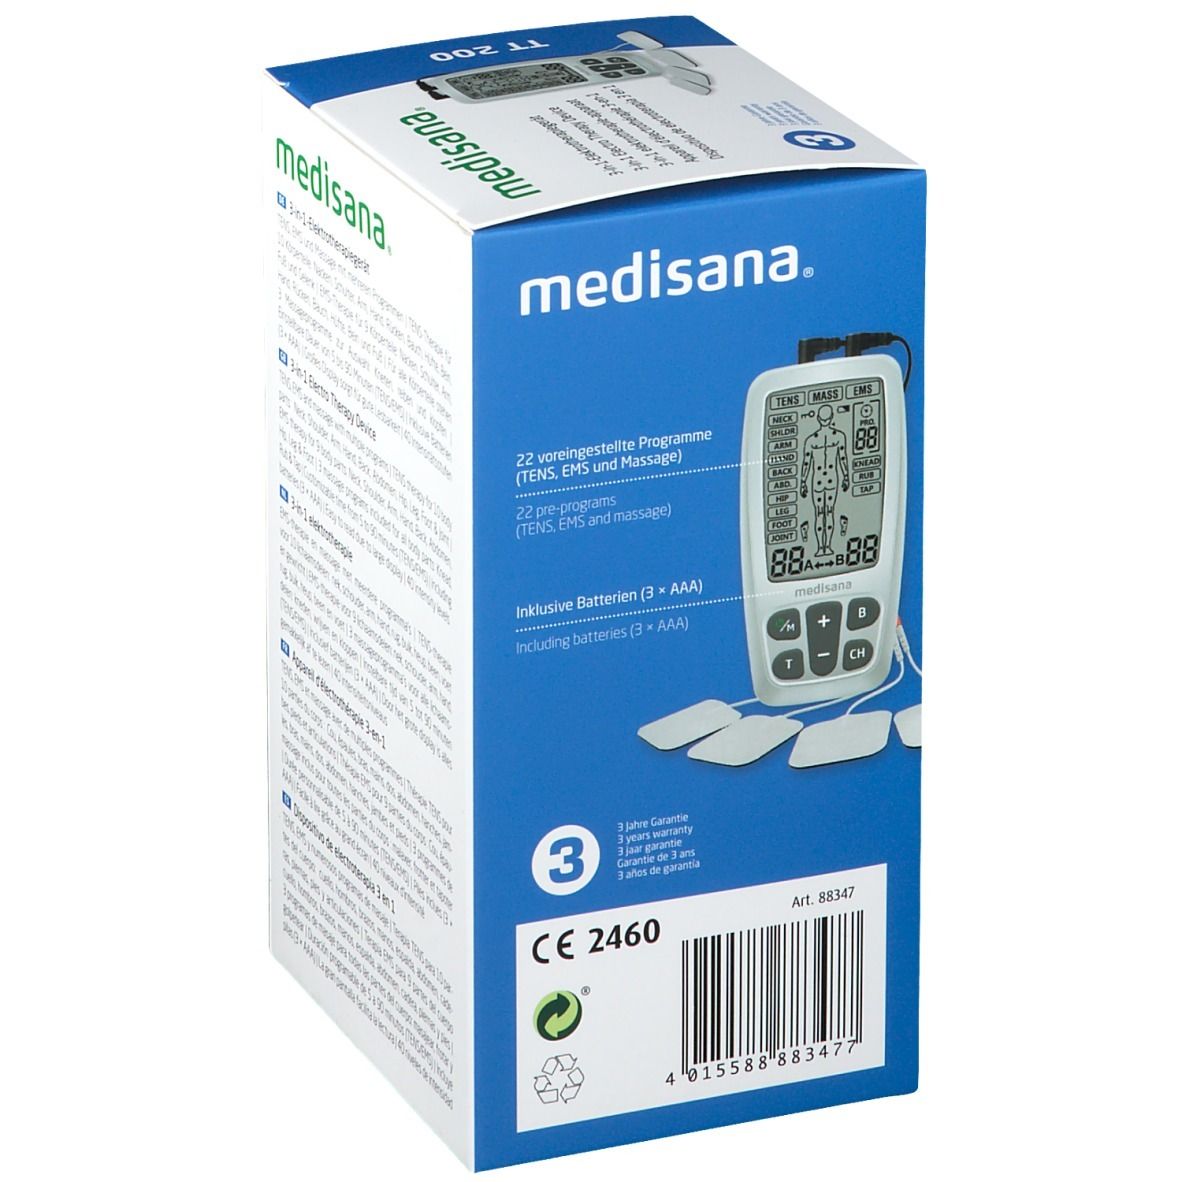 Medisana® 3-in-1 Dispositivo di Elettroterapia TT200